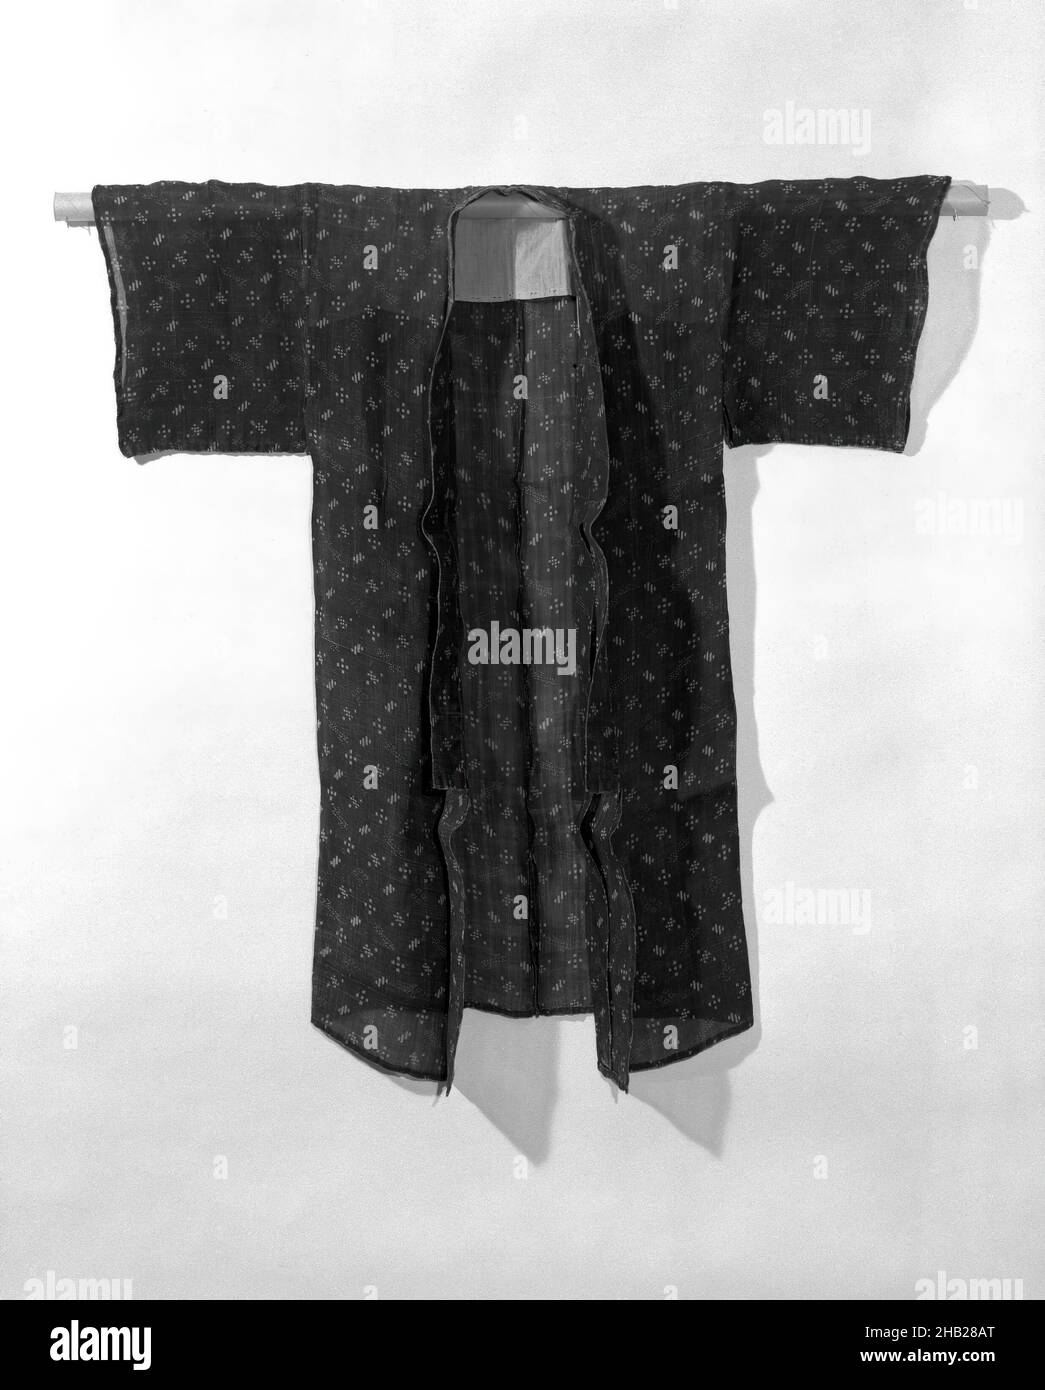 Kimono, Bastfasertuch, möglicherweise Hanf oder Ramie, in Indigo gefärbt,  Japan, 19th Jahrhundert, Meiji-Zeit, 44 x 43 Zoll, 111,8 x 109,2 cm, schwarz,  Kimono, lang, transparent, Dünn Stockfotografie - Alamy